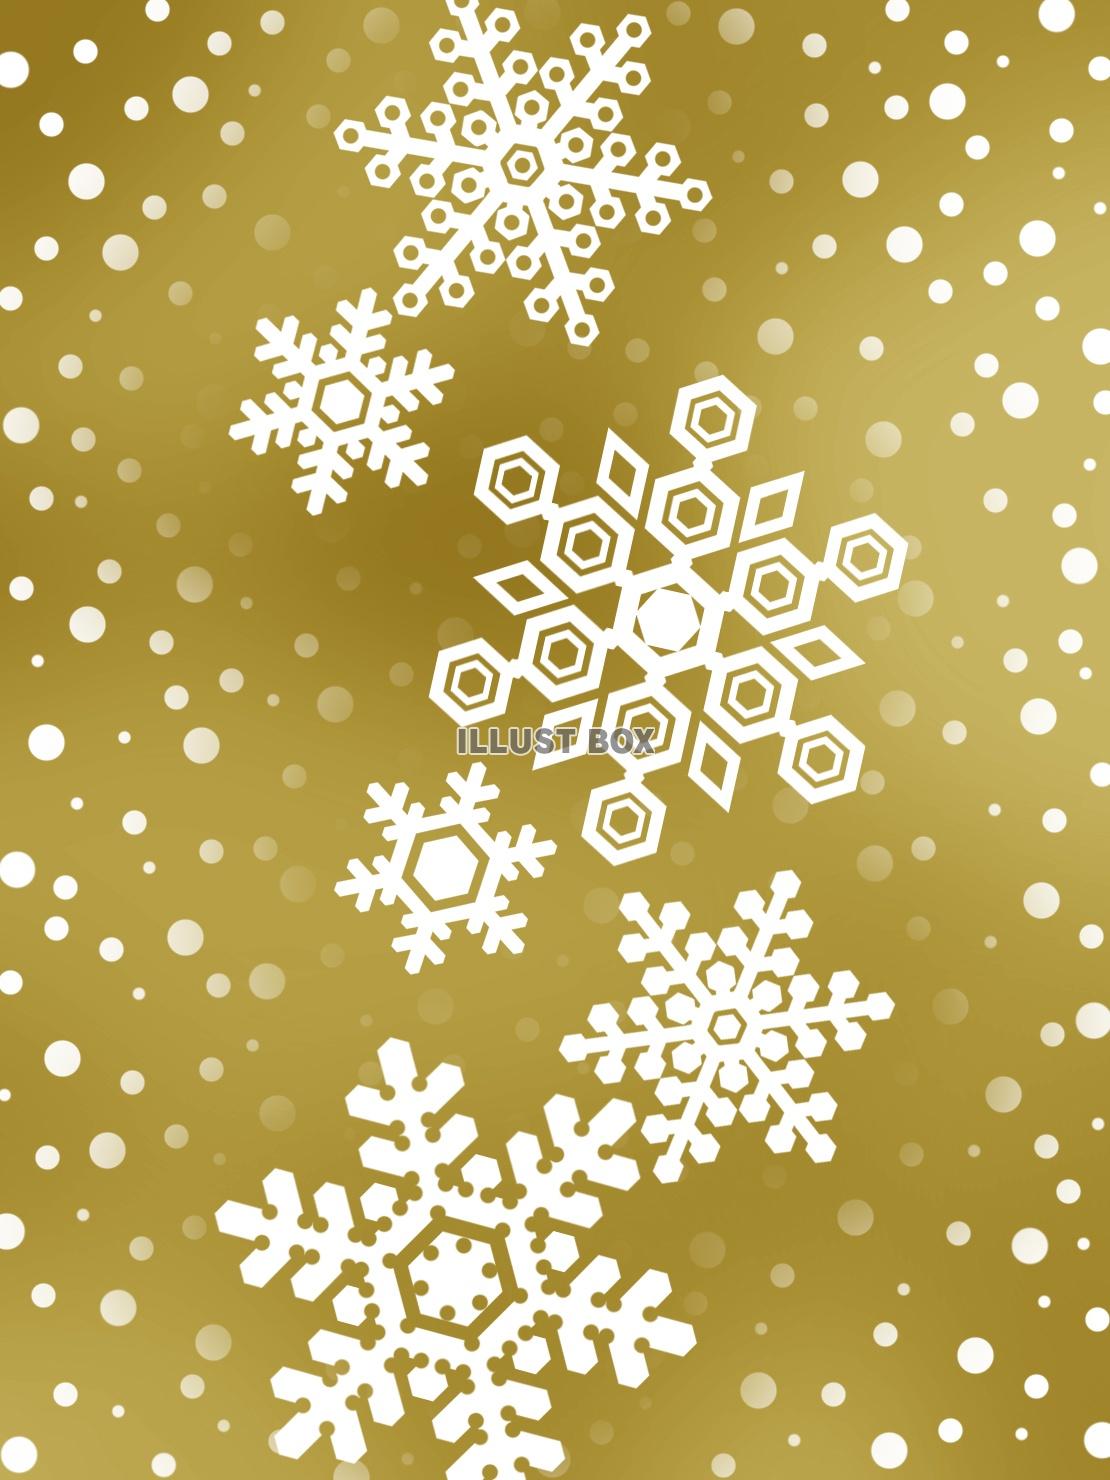 無料イラスト 雪の結晶壁紙冬のイメージ背景素材イラスト